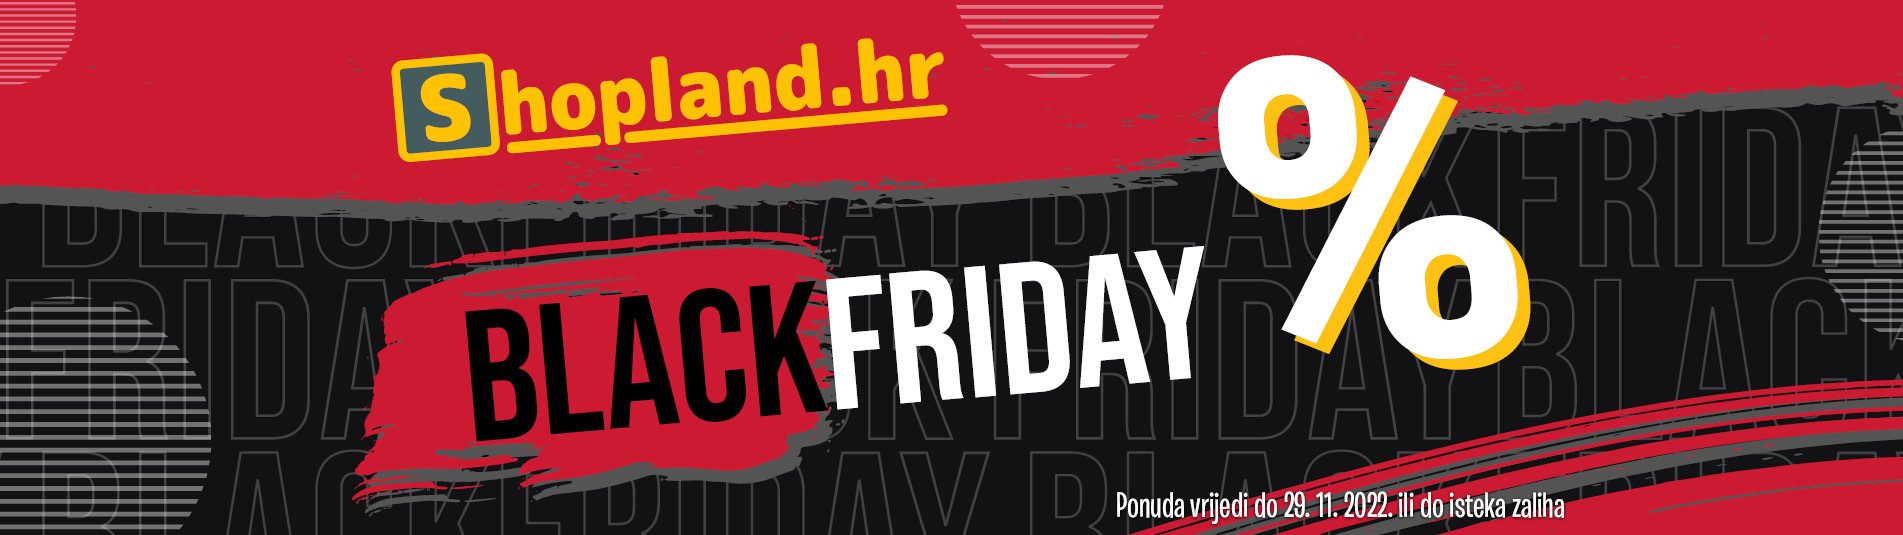 Black Friday Shopland.hr